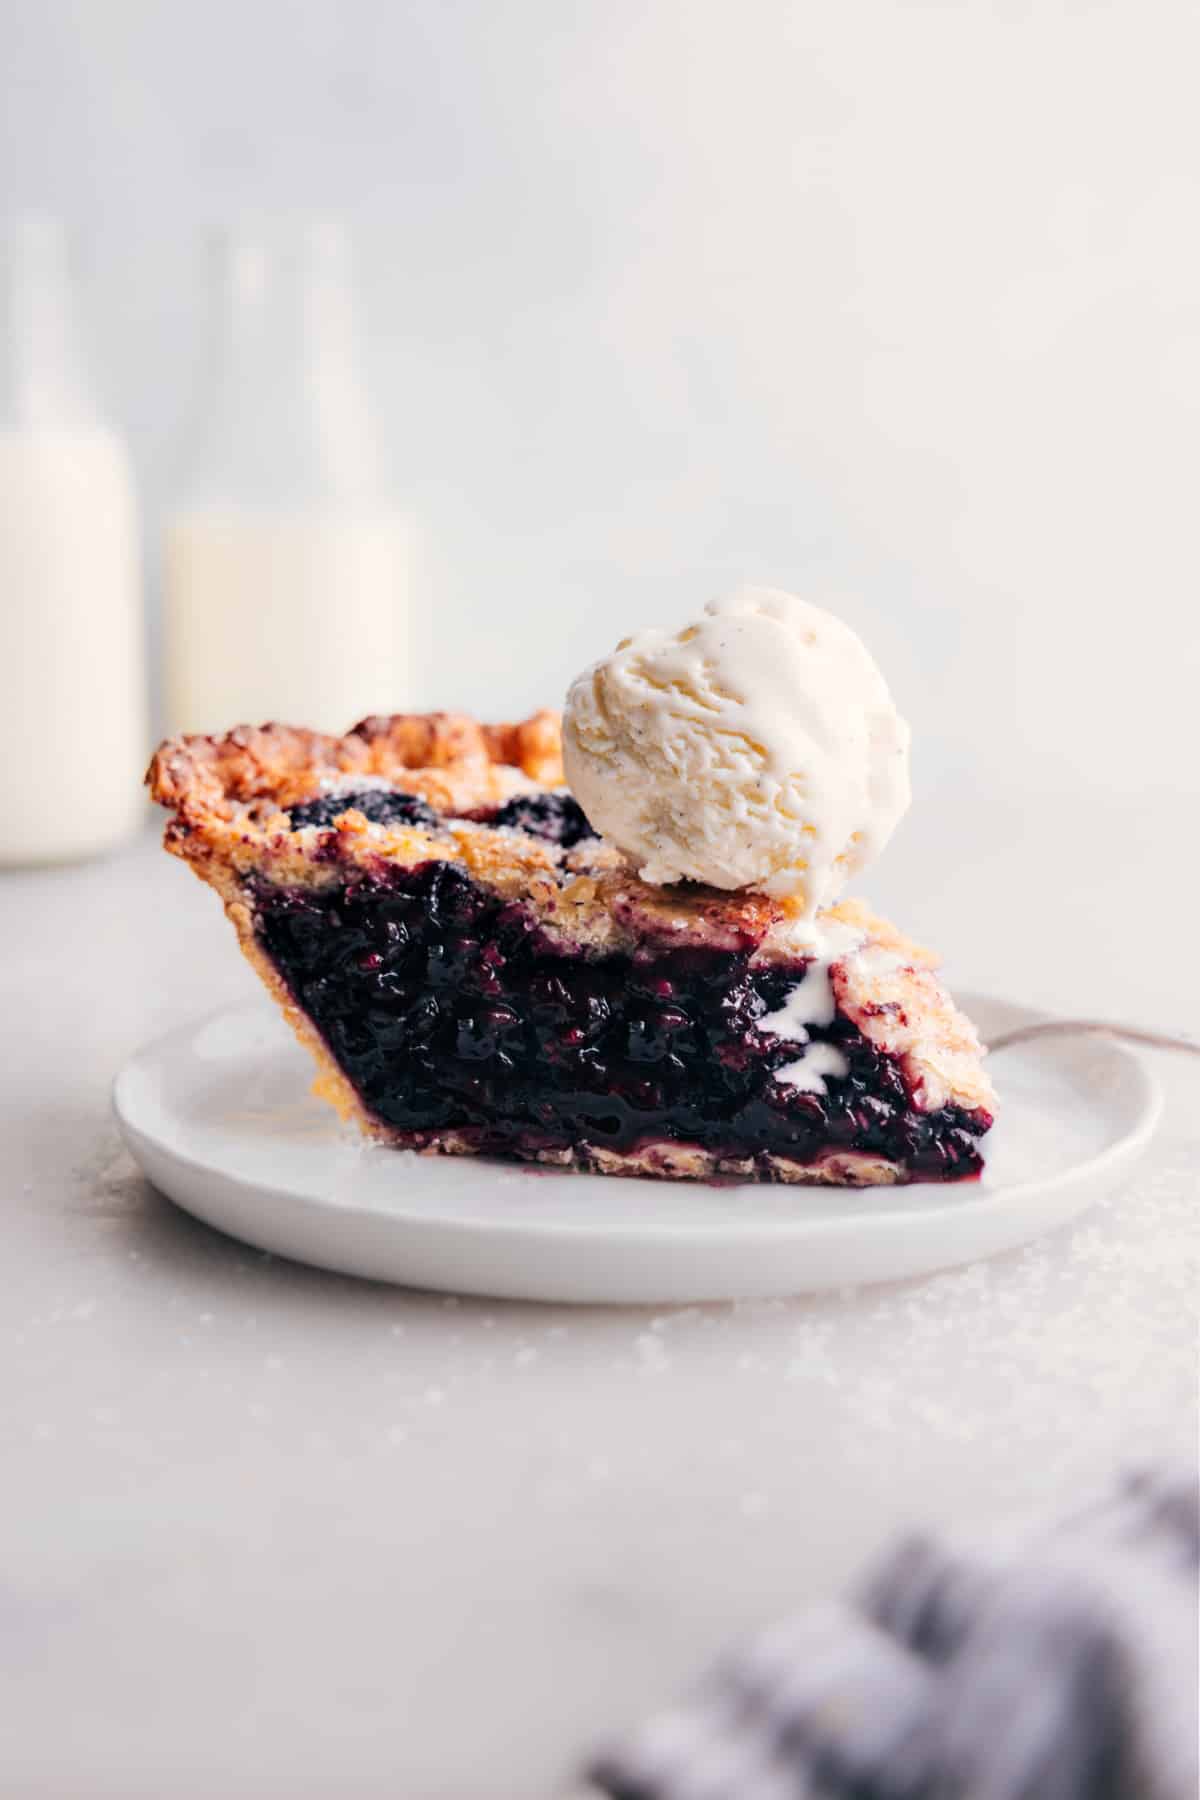 Slice of berry pie with ice cream on top.